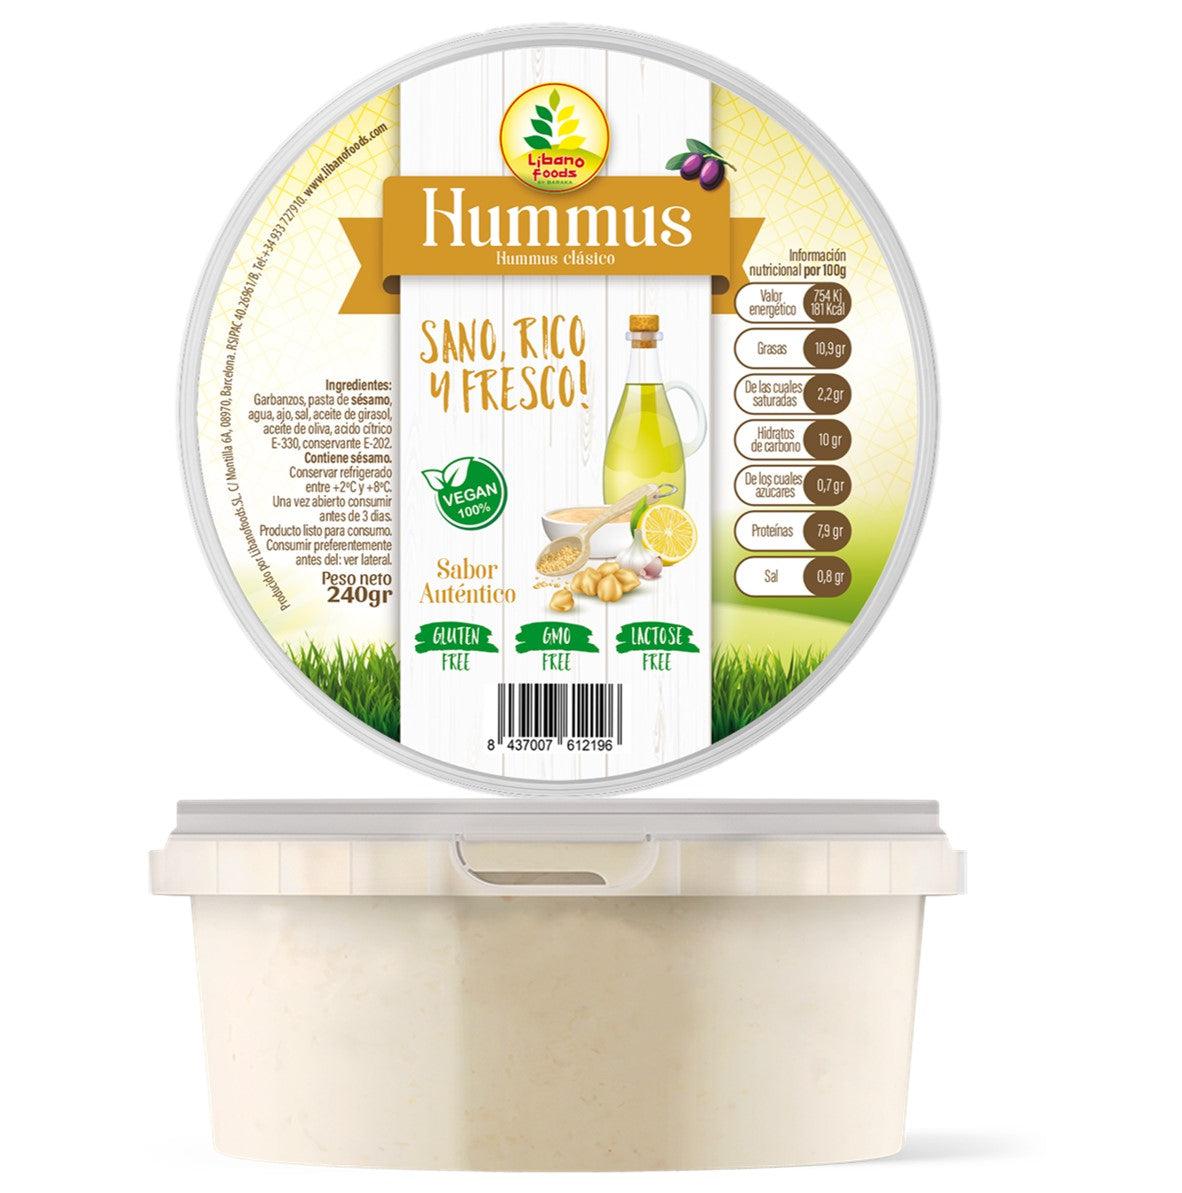 Hummus Artesanal, Libanofoods, 240 gr